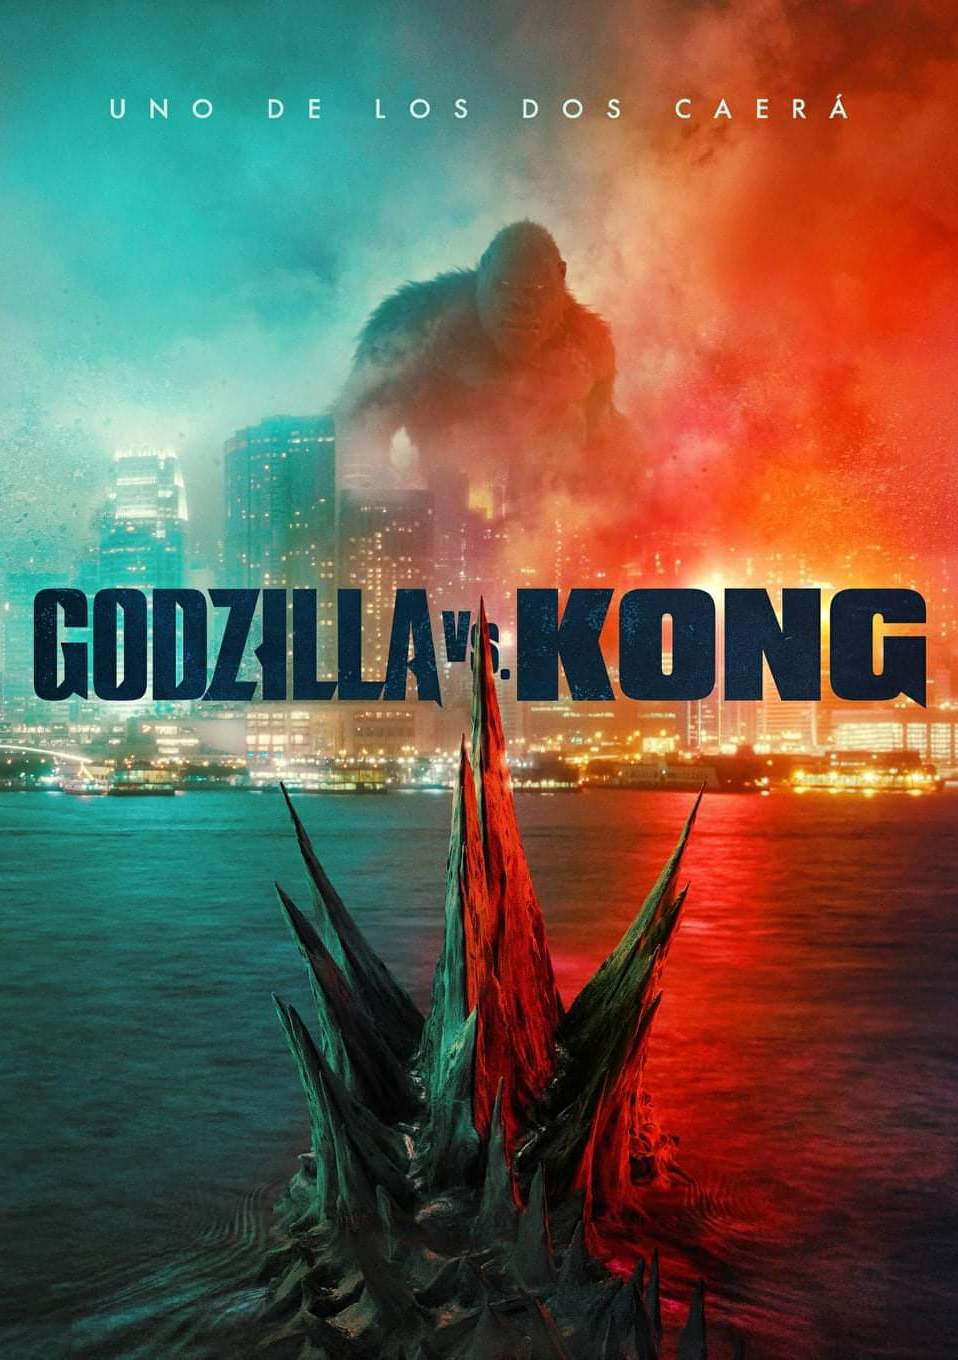 MonsterVerse (Godzilla-Kong) [2014-2024] (1080p) + [Comics]